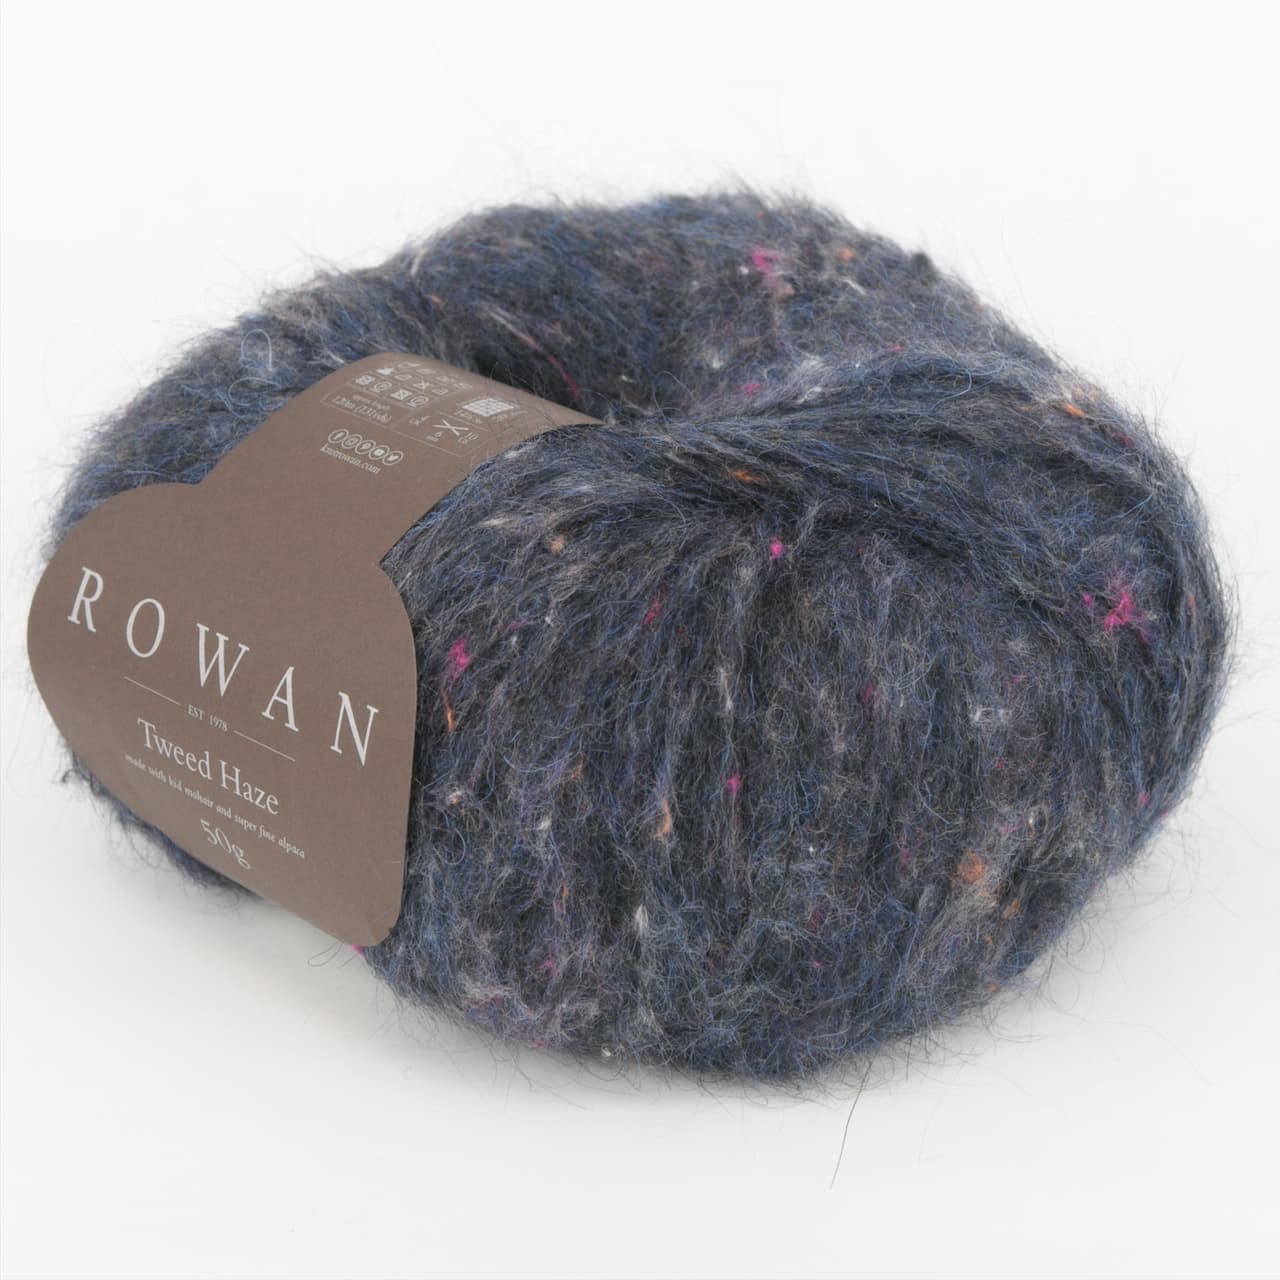 Rowan Tweed Haze